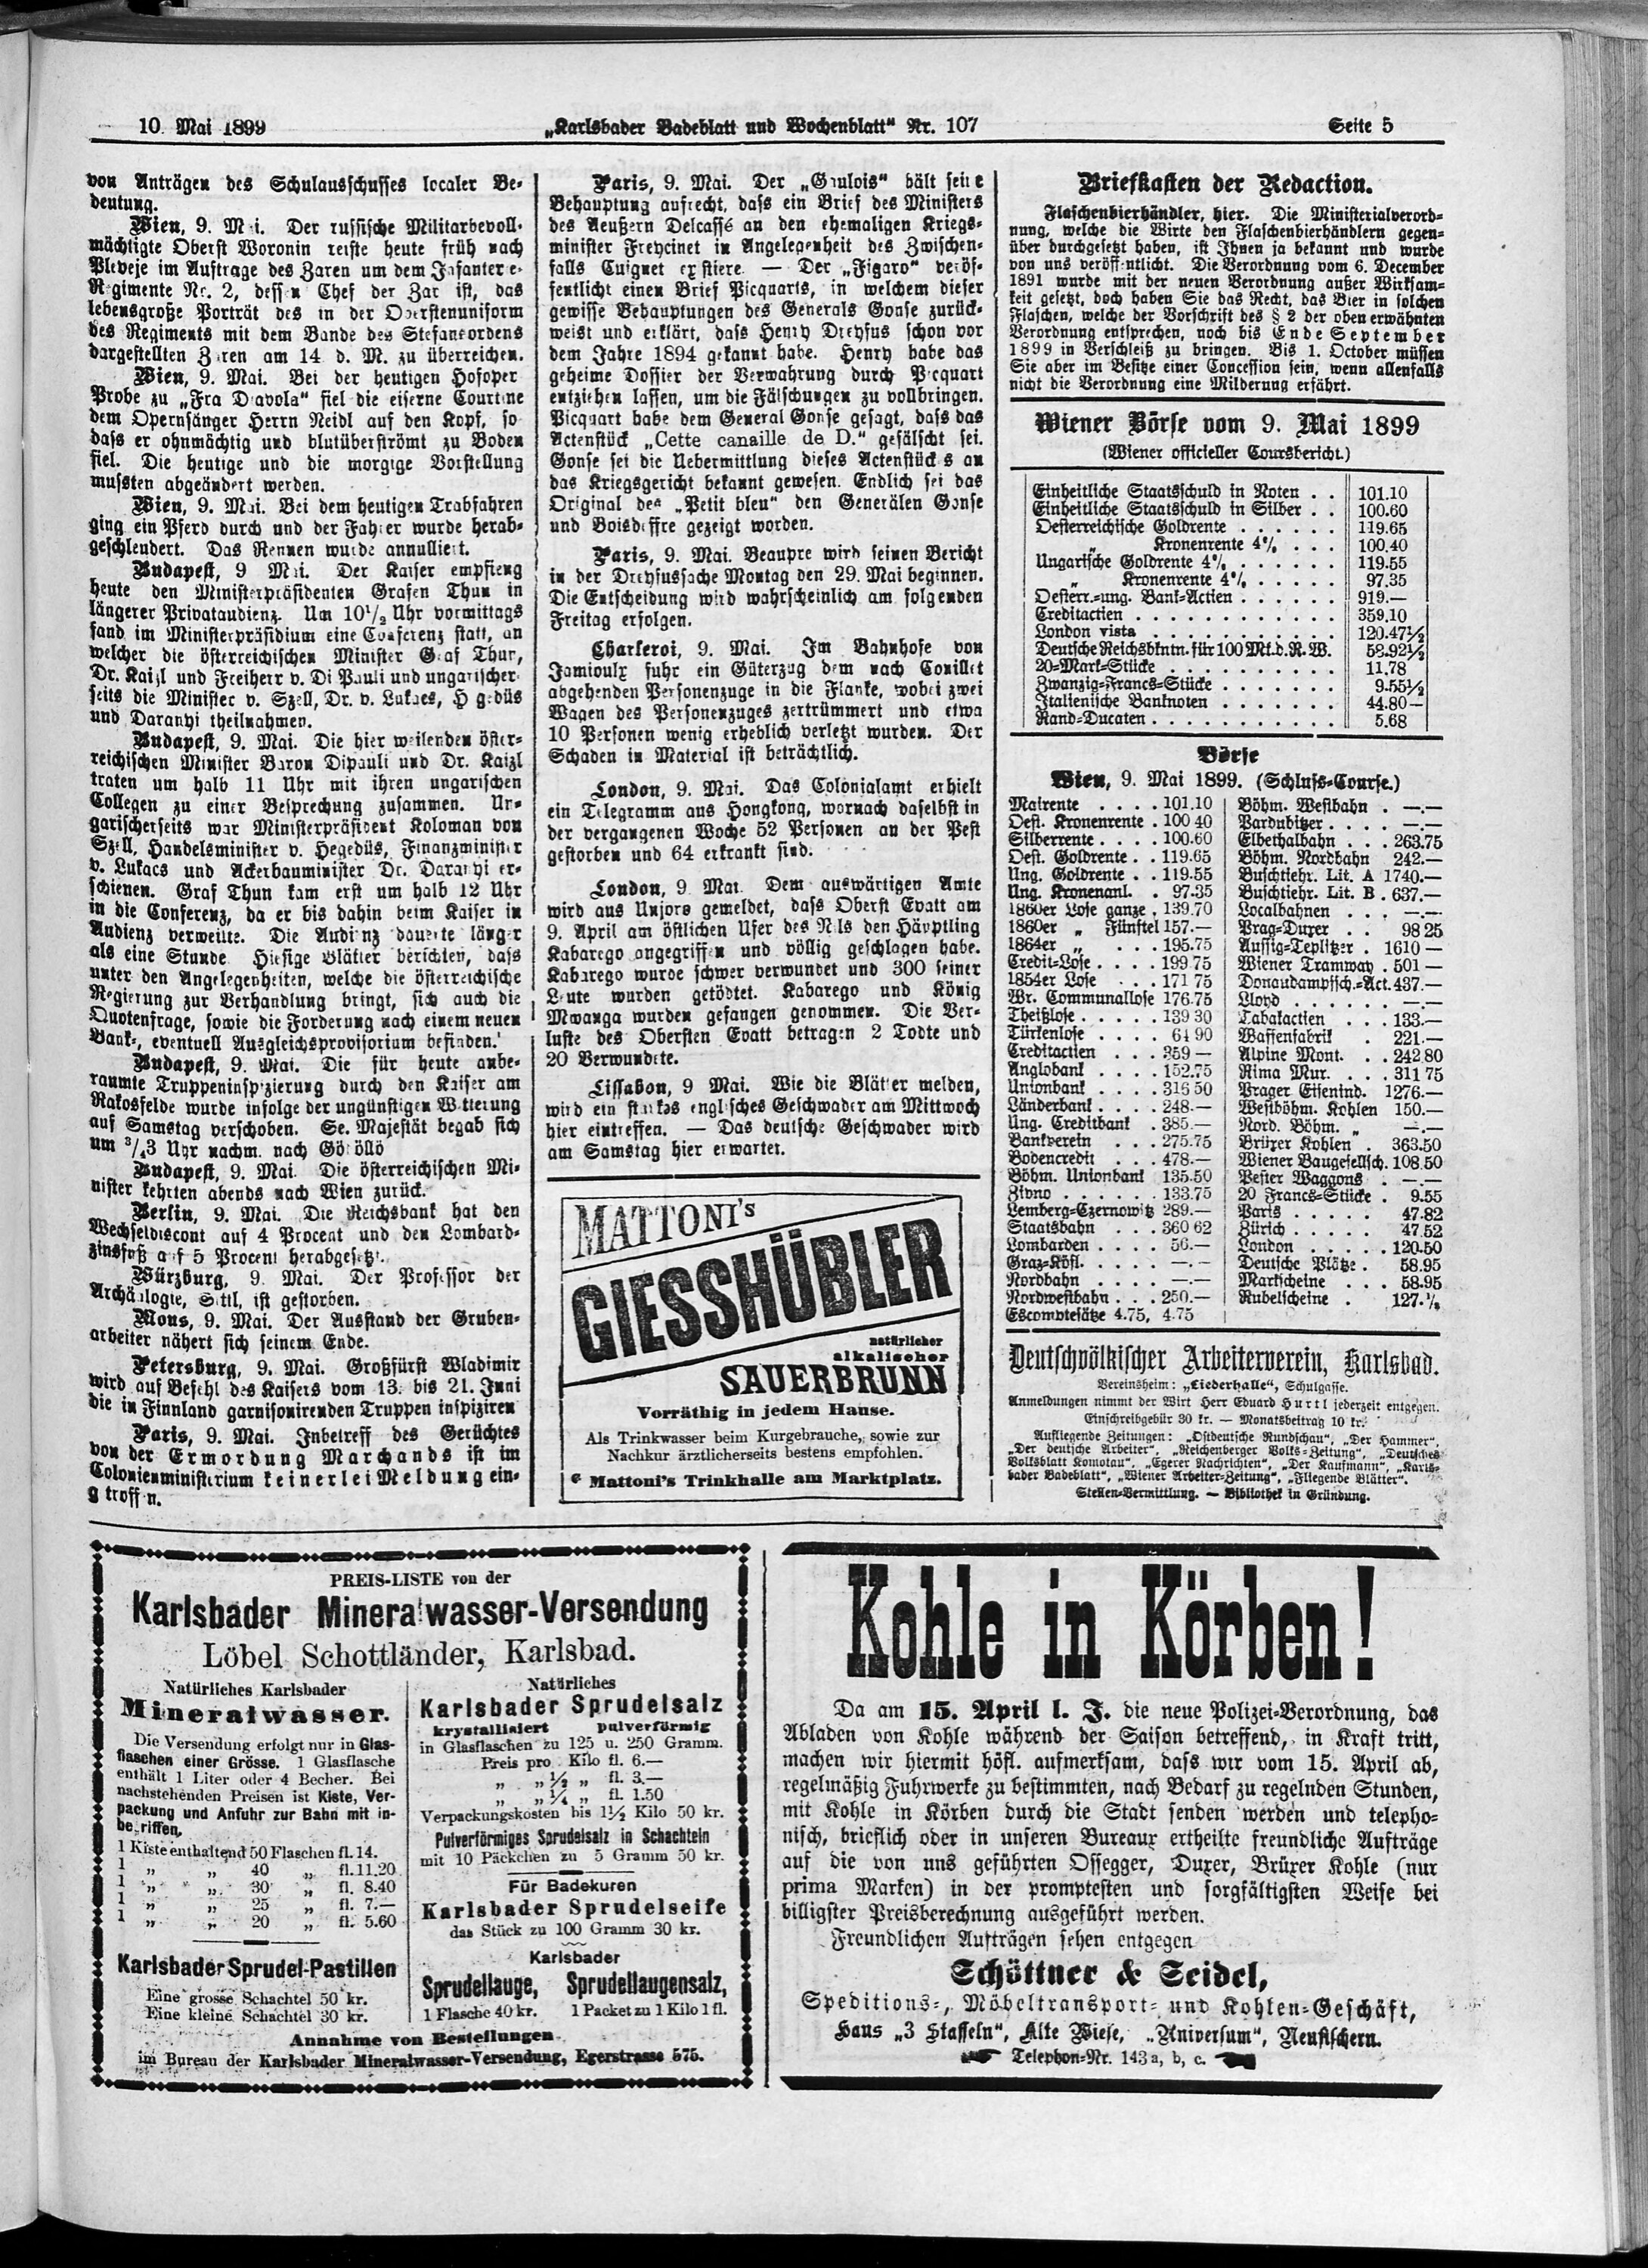 5. karlsbader-badeblatt-1899-05-10-n107_4955